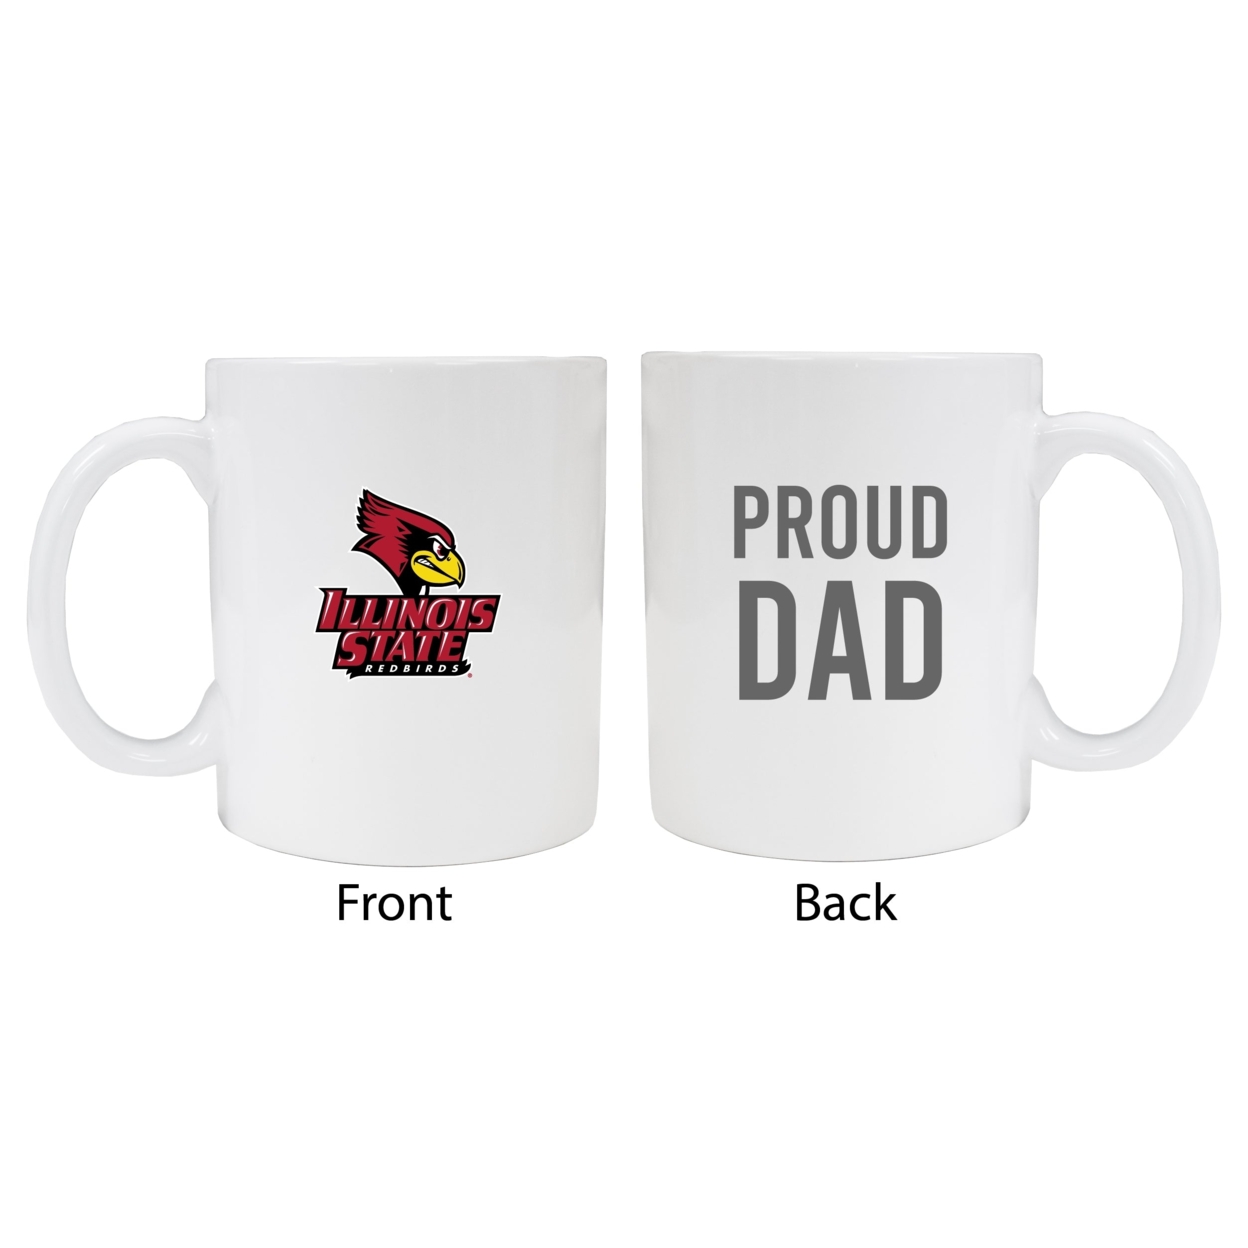 Illinois State Redbirds Proud Dad Ceramic Coffee Mug - White (2 Pack)